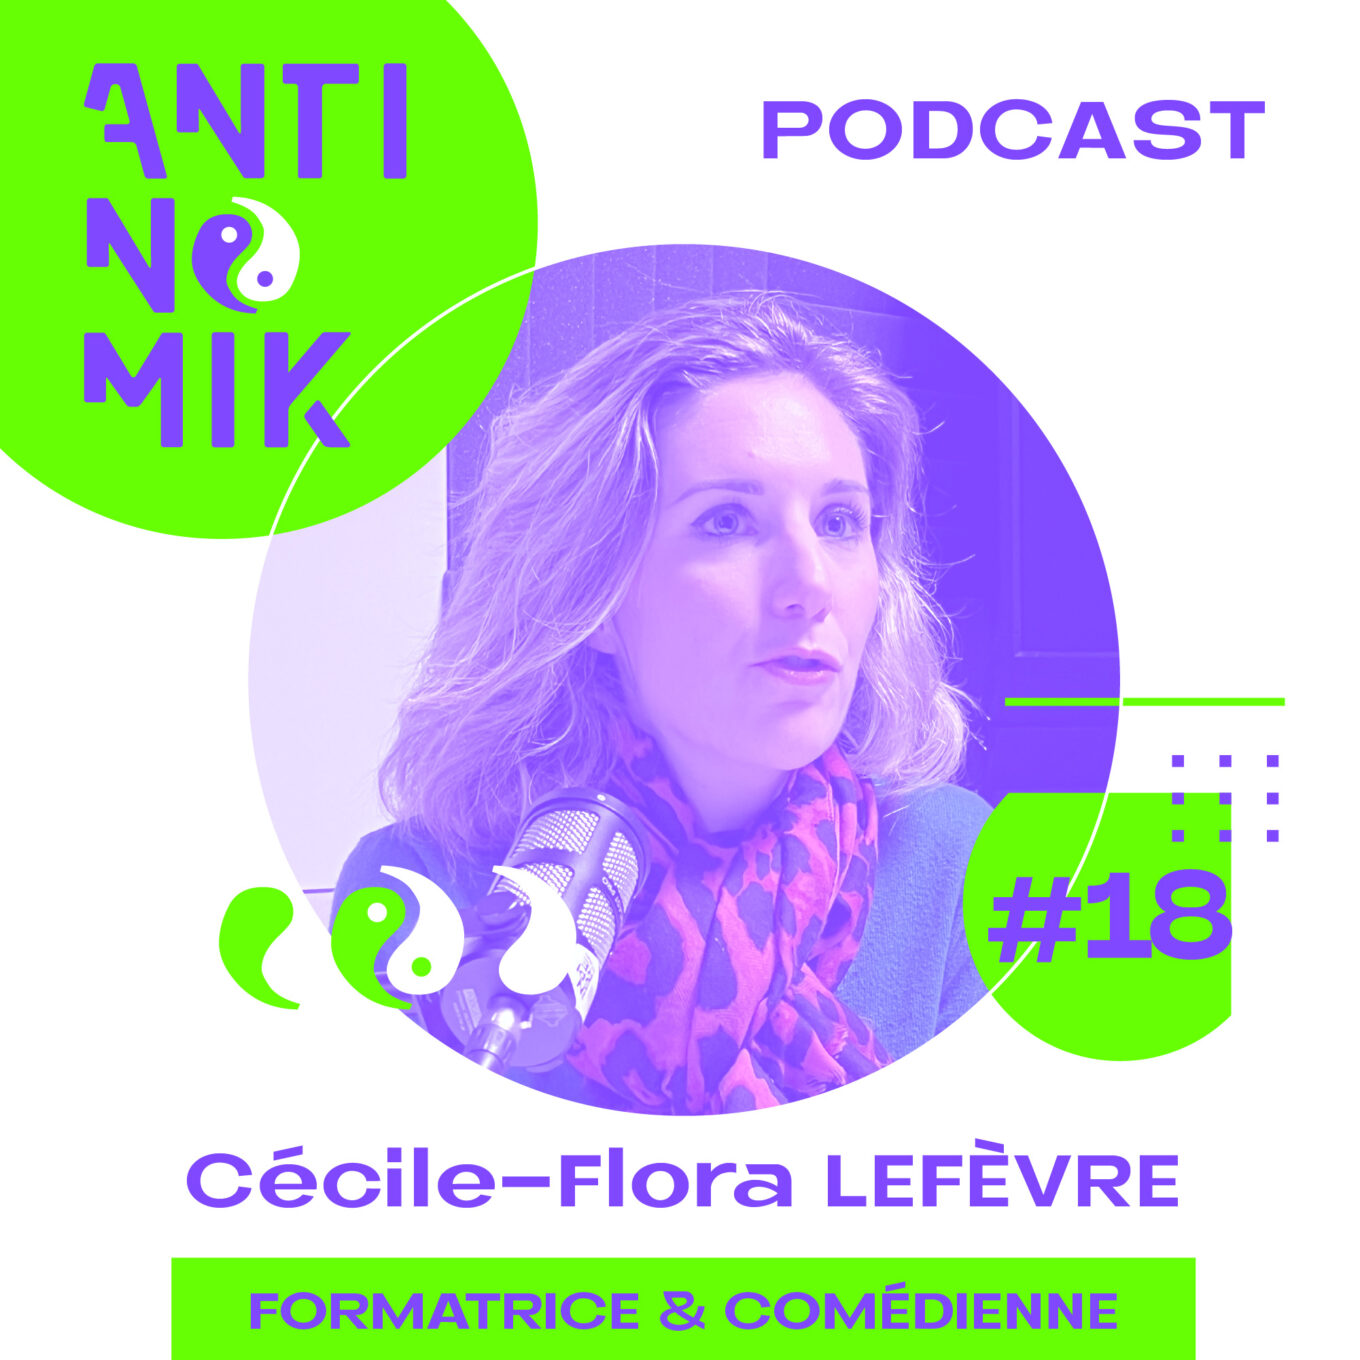 Cécile FLORA – Formatrice & Comédienne - Mobile